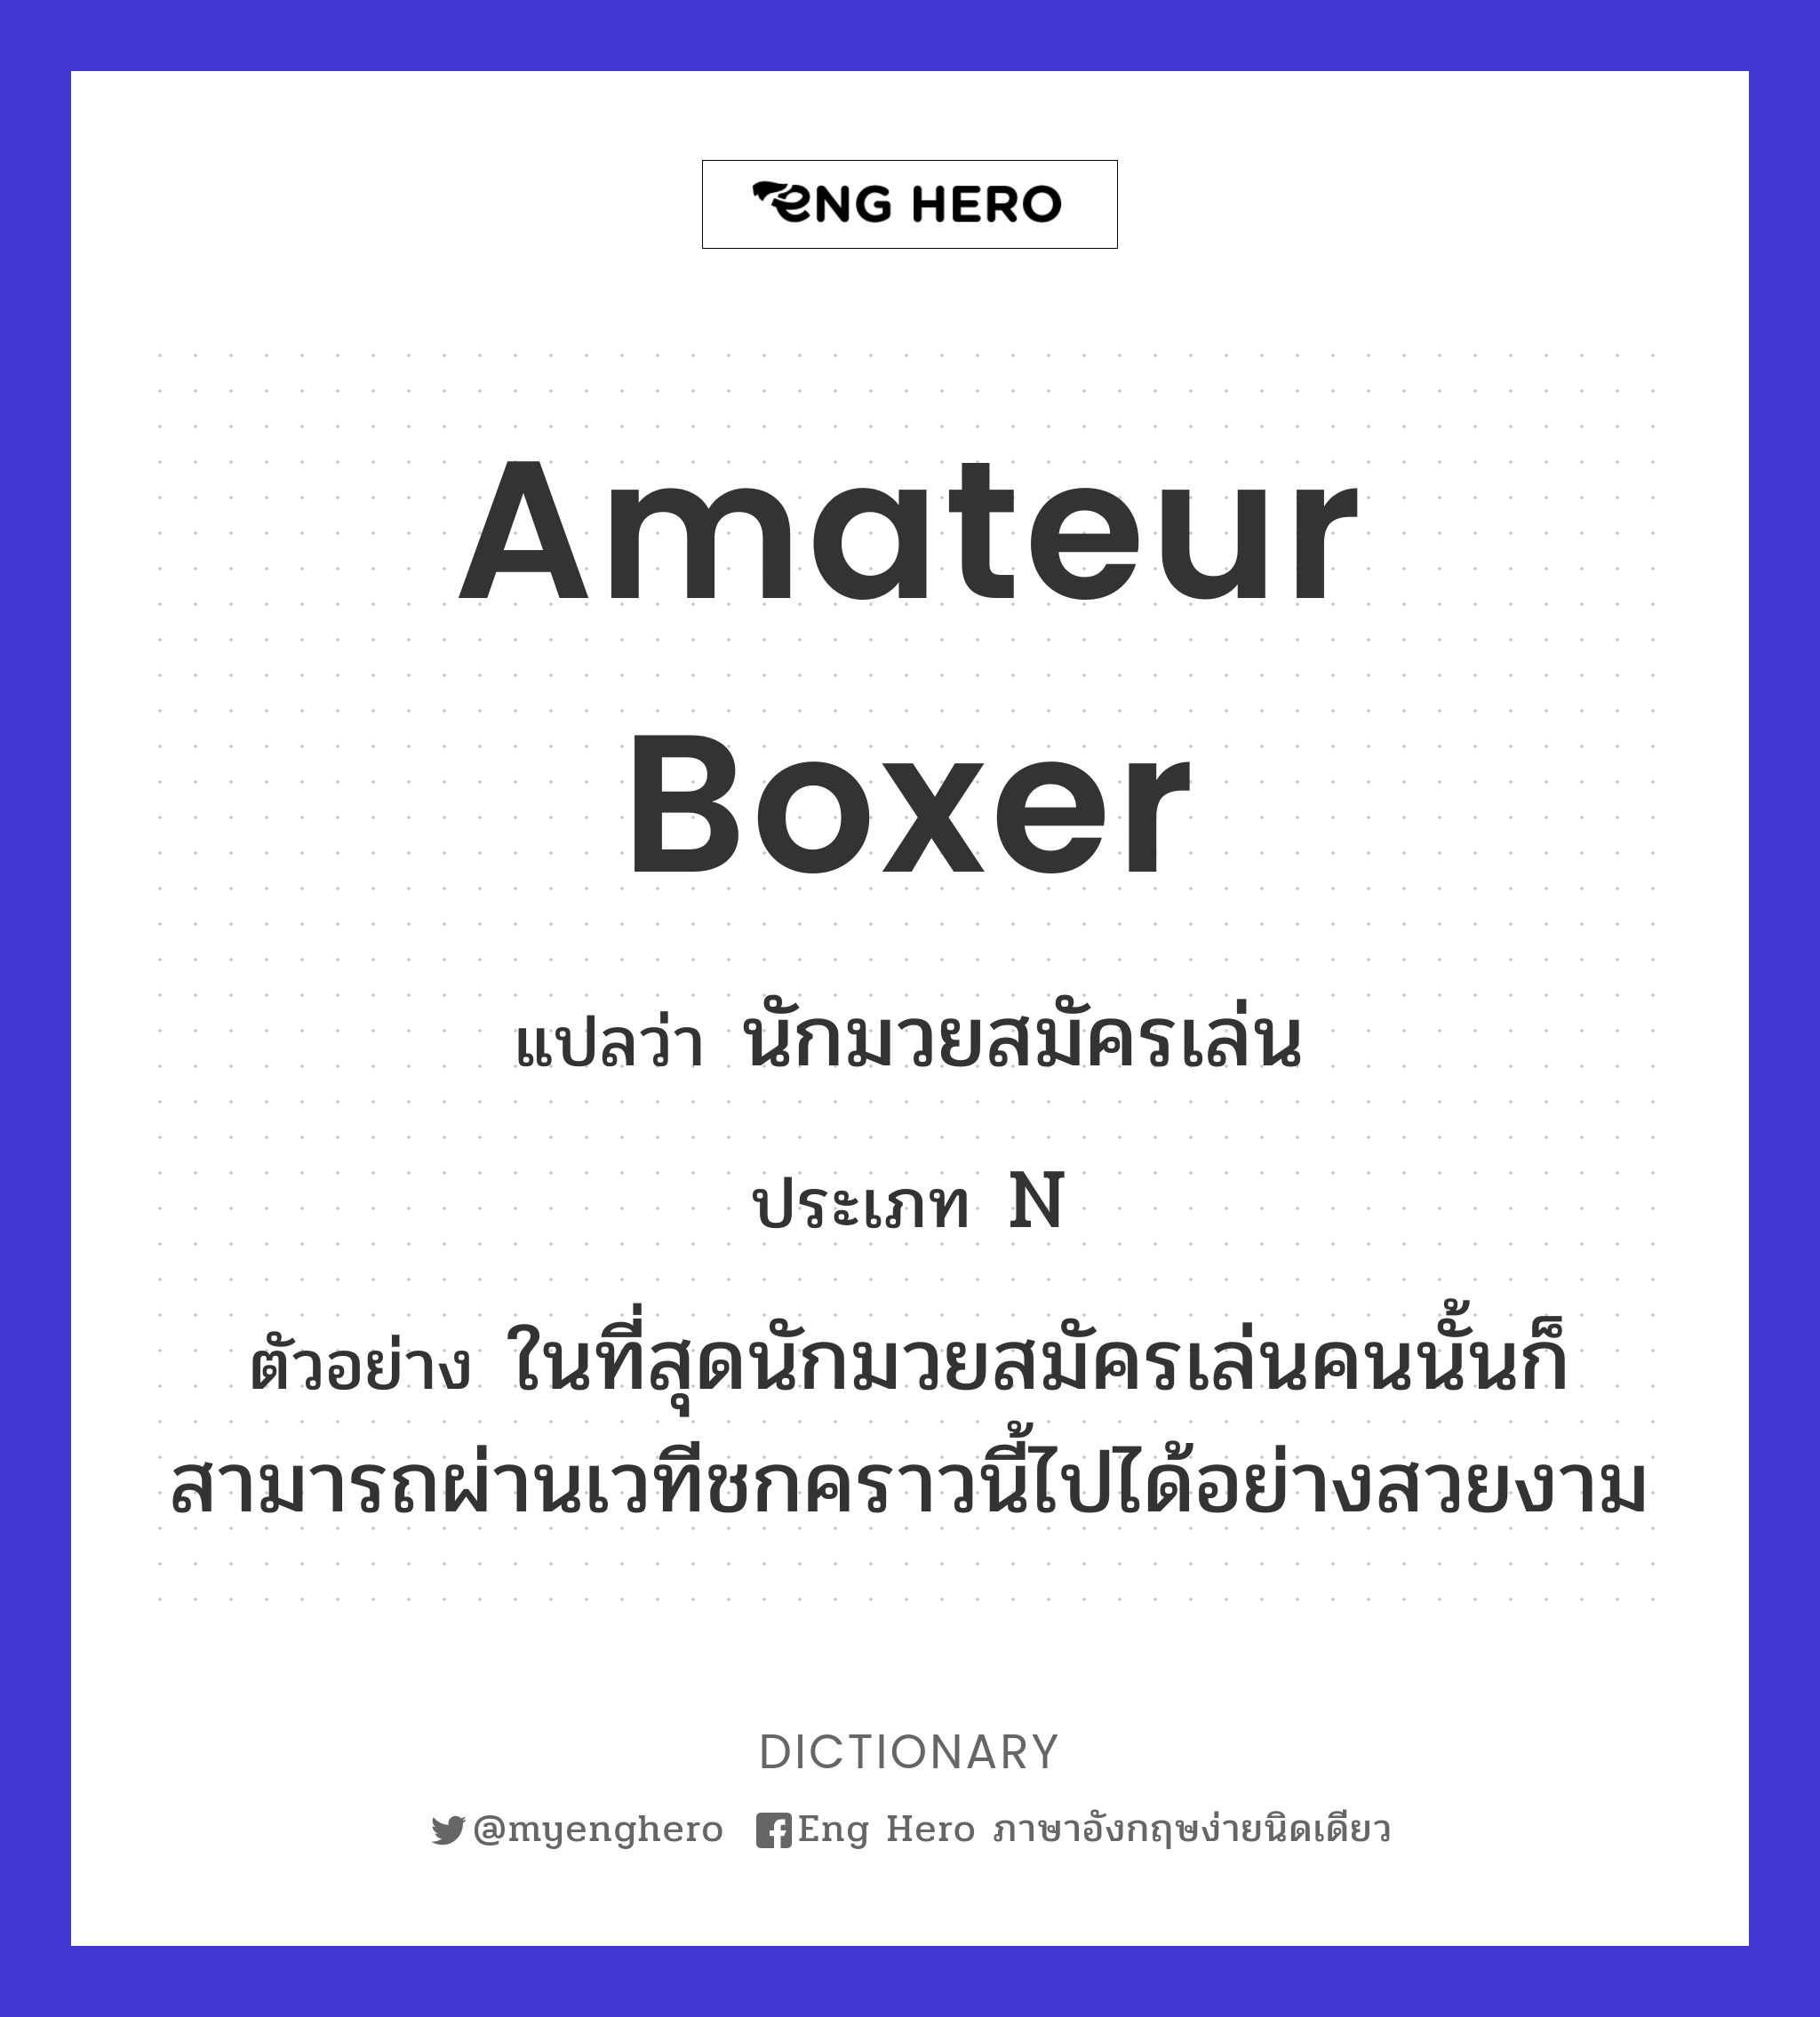 amateur boxer